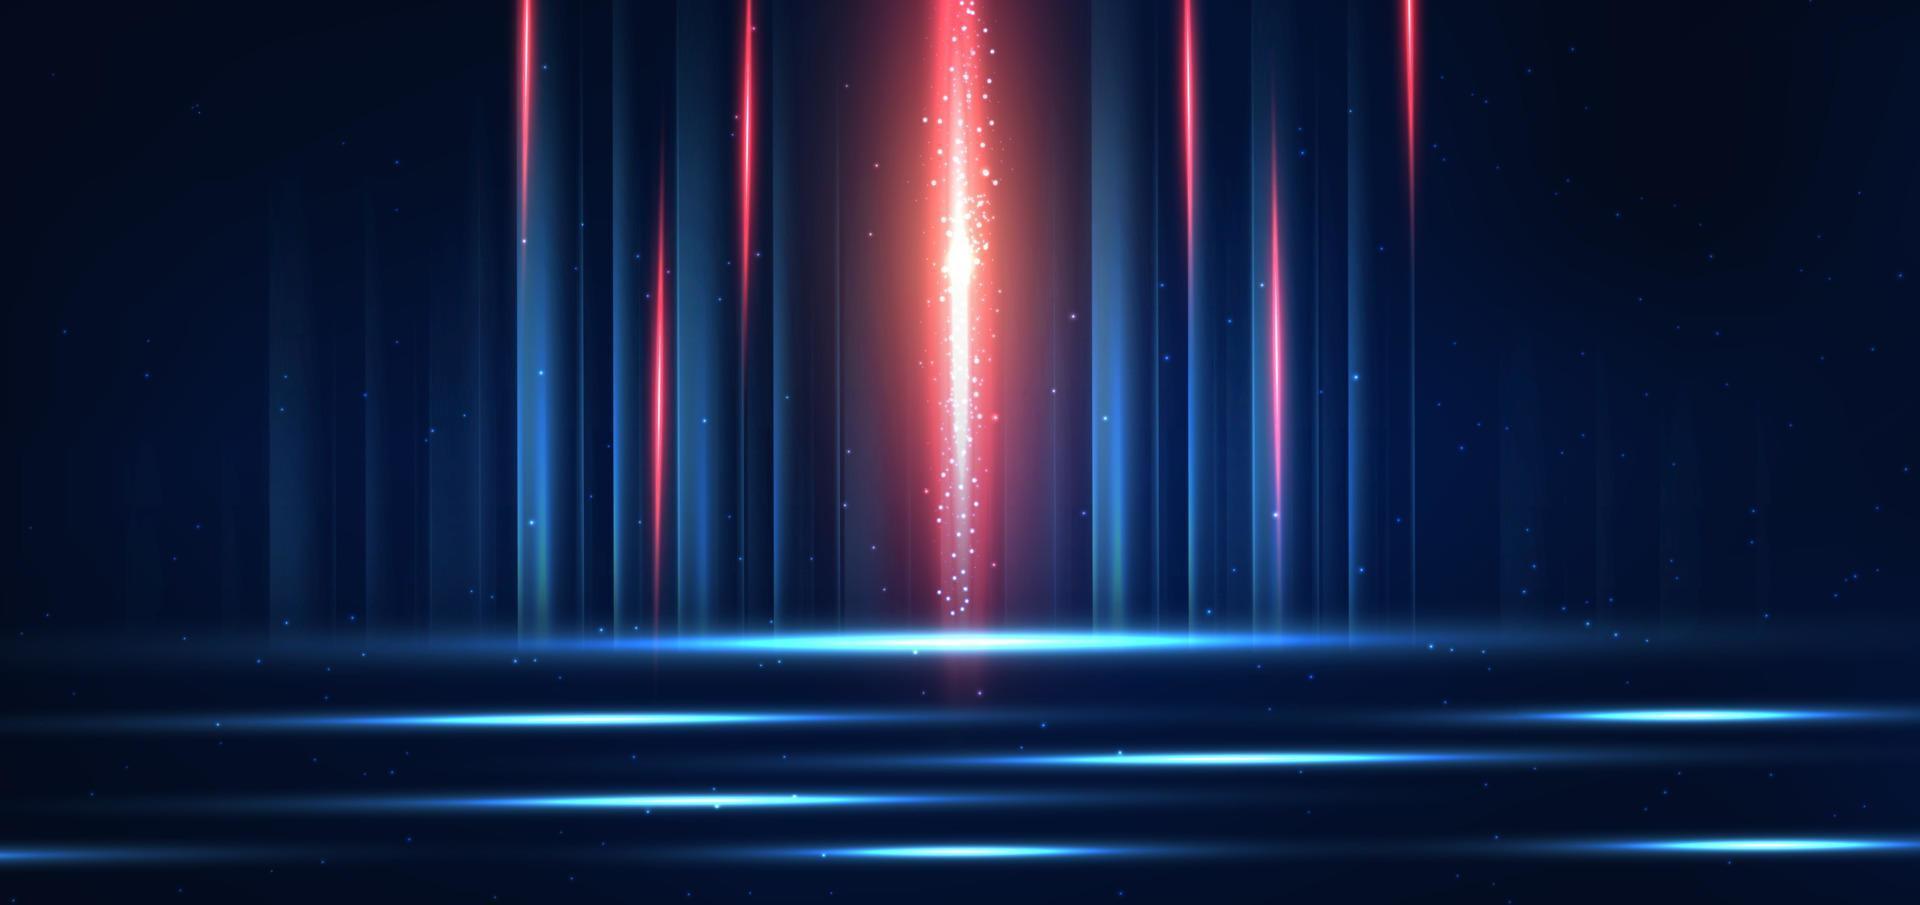 technologie abstraite lignes lumineuses bleues et rouges rougeoyantes futuristes avec effet de flou de mouvement de vitesse sur fond bleu foncé. vecteur